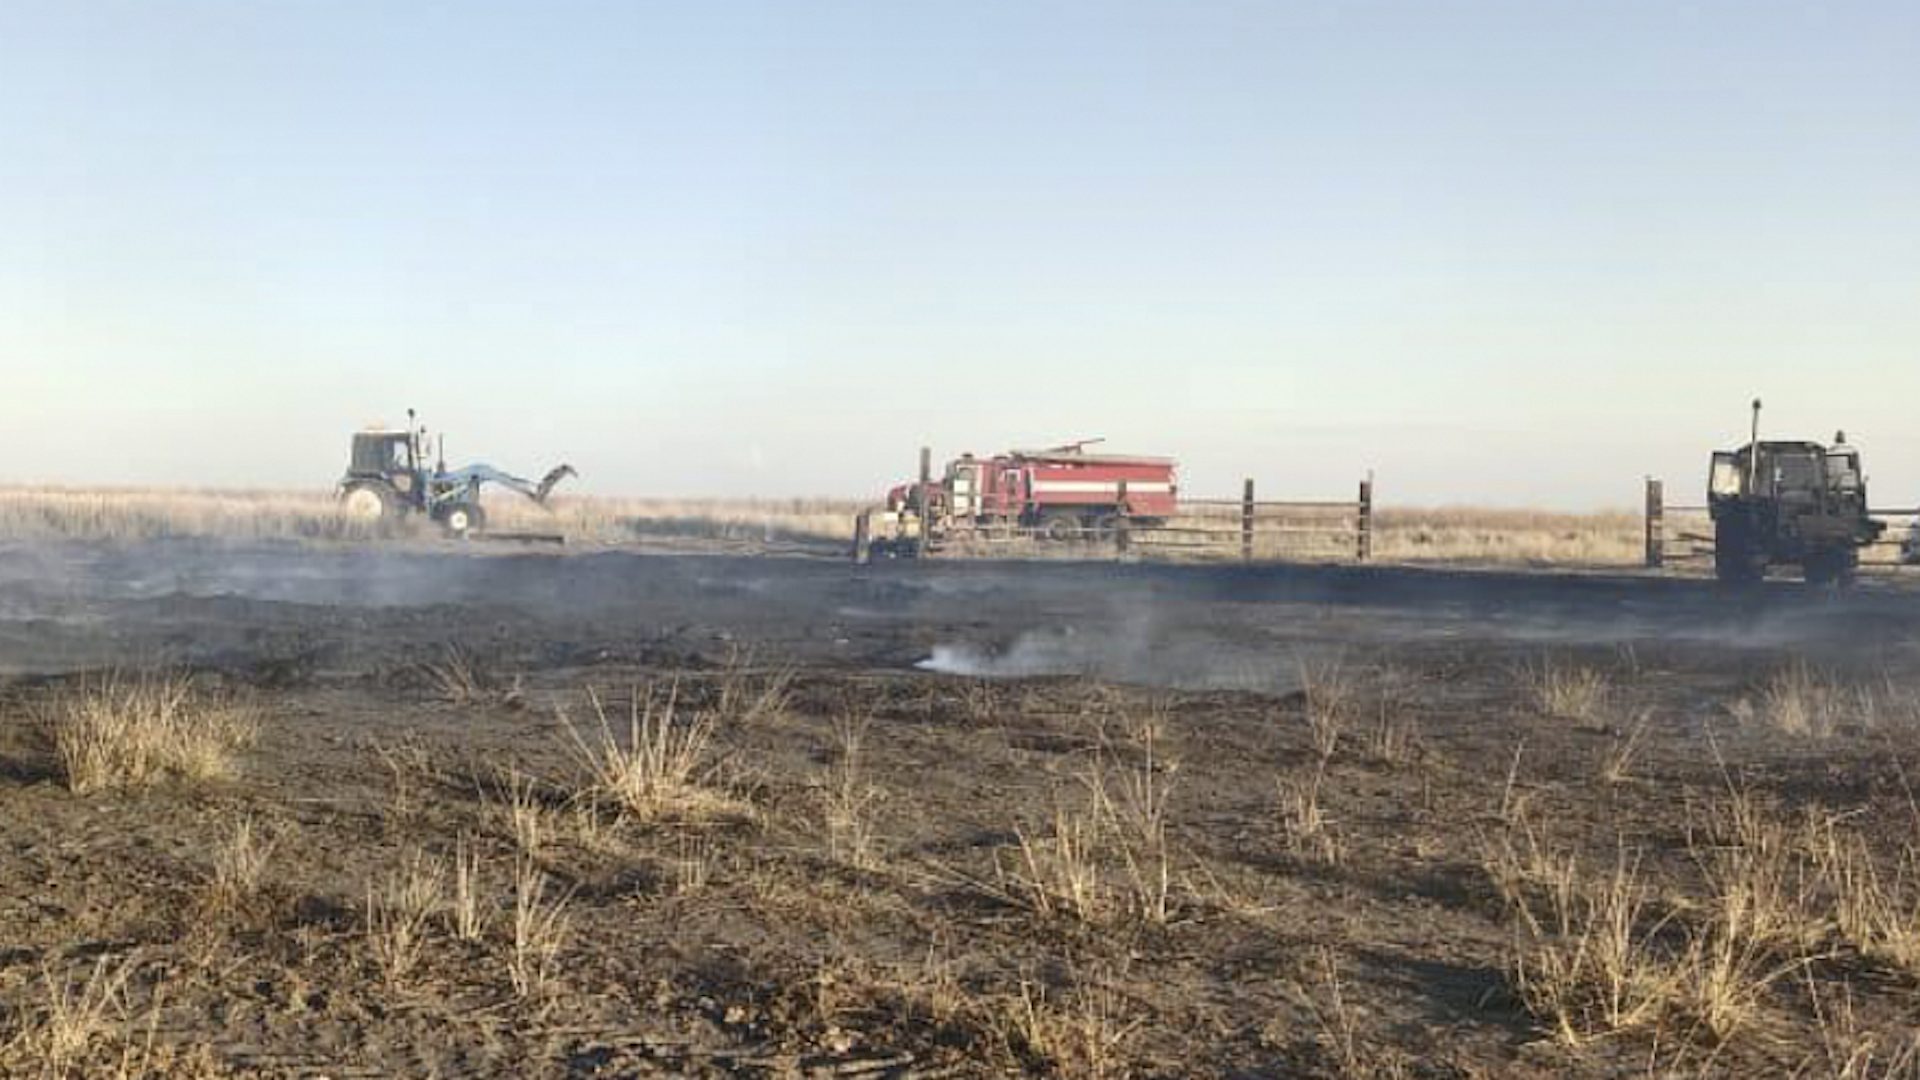 Дети, игравшие со спичками, сожгли 82 тонны сена в Казахстане: родители должны заплатить ущерб